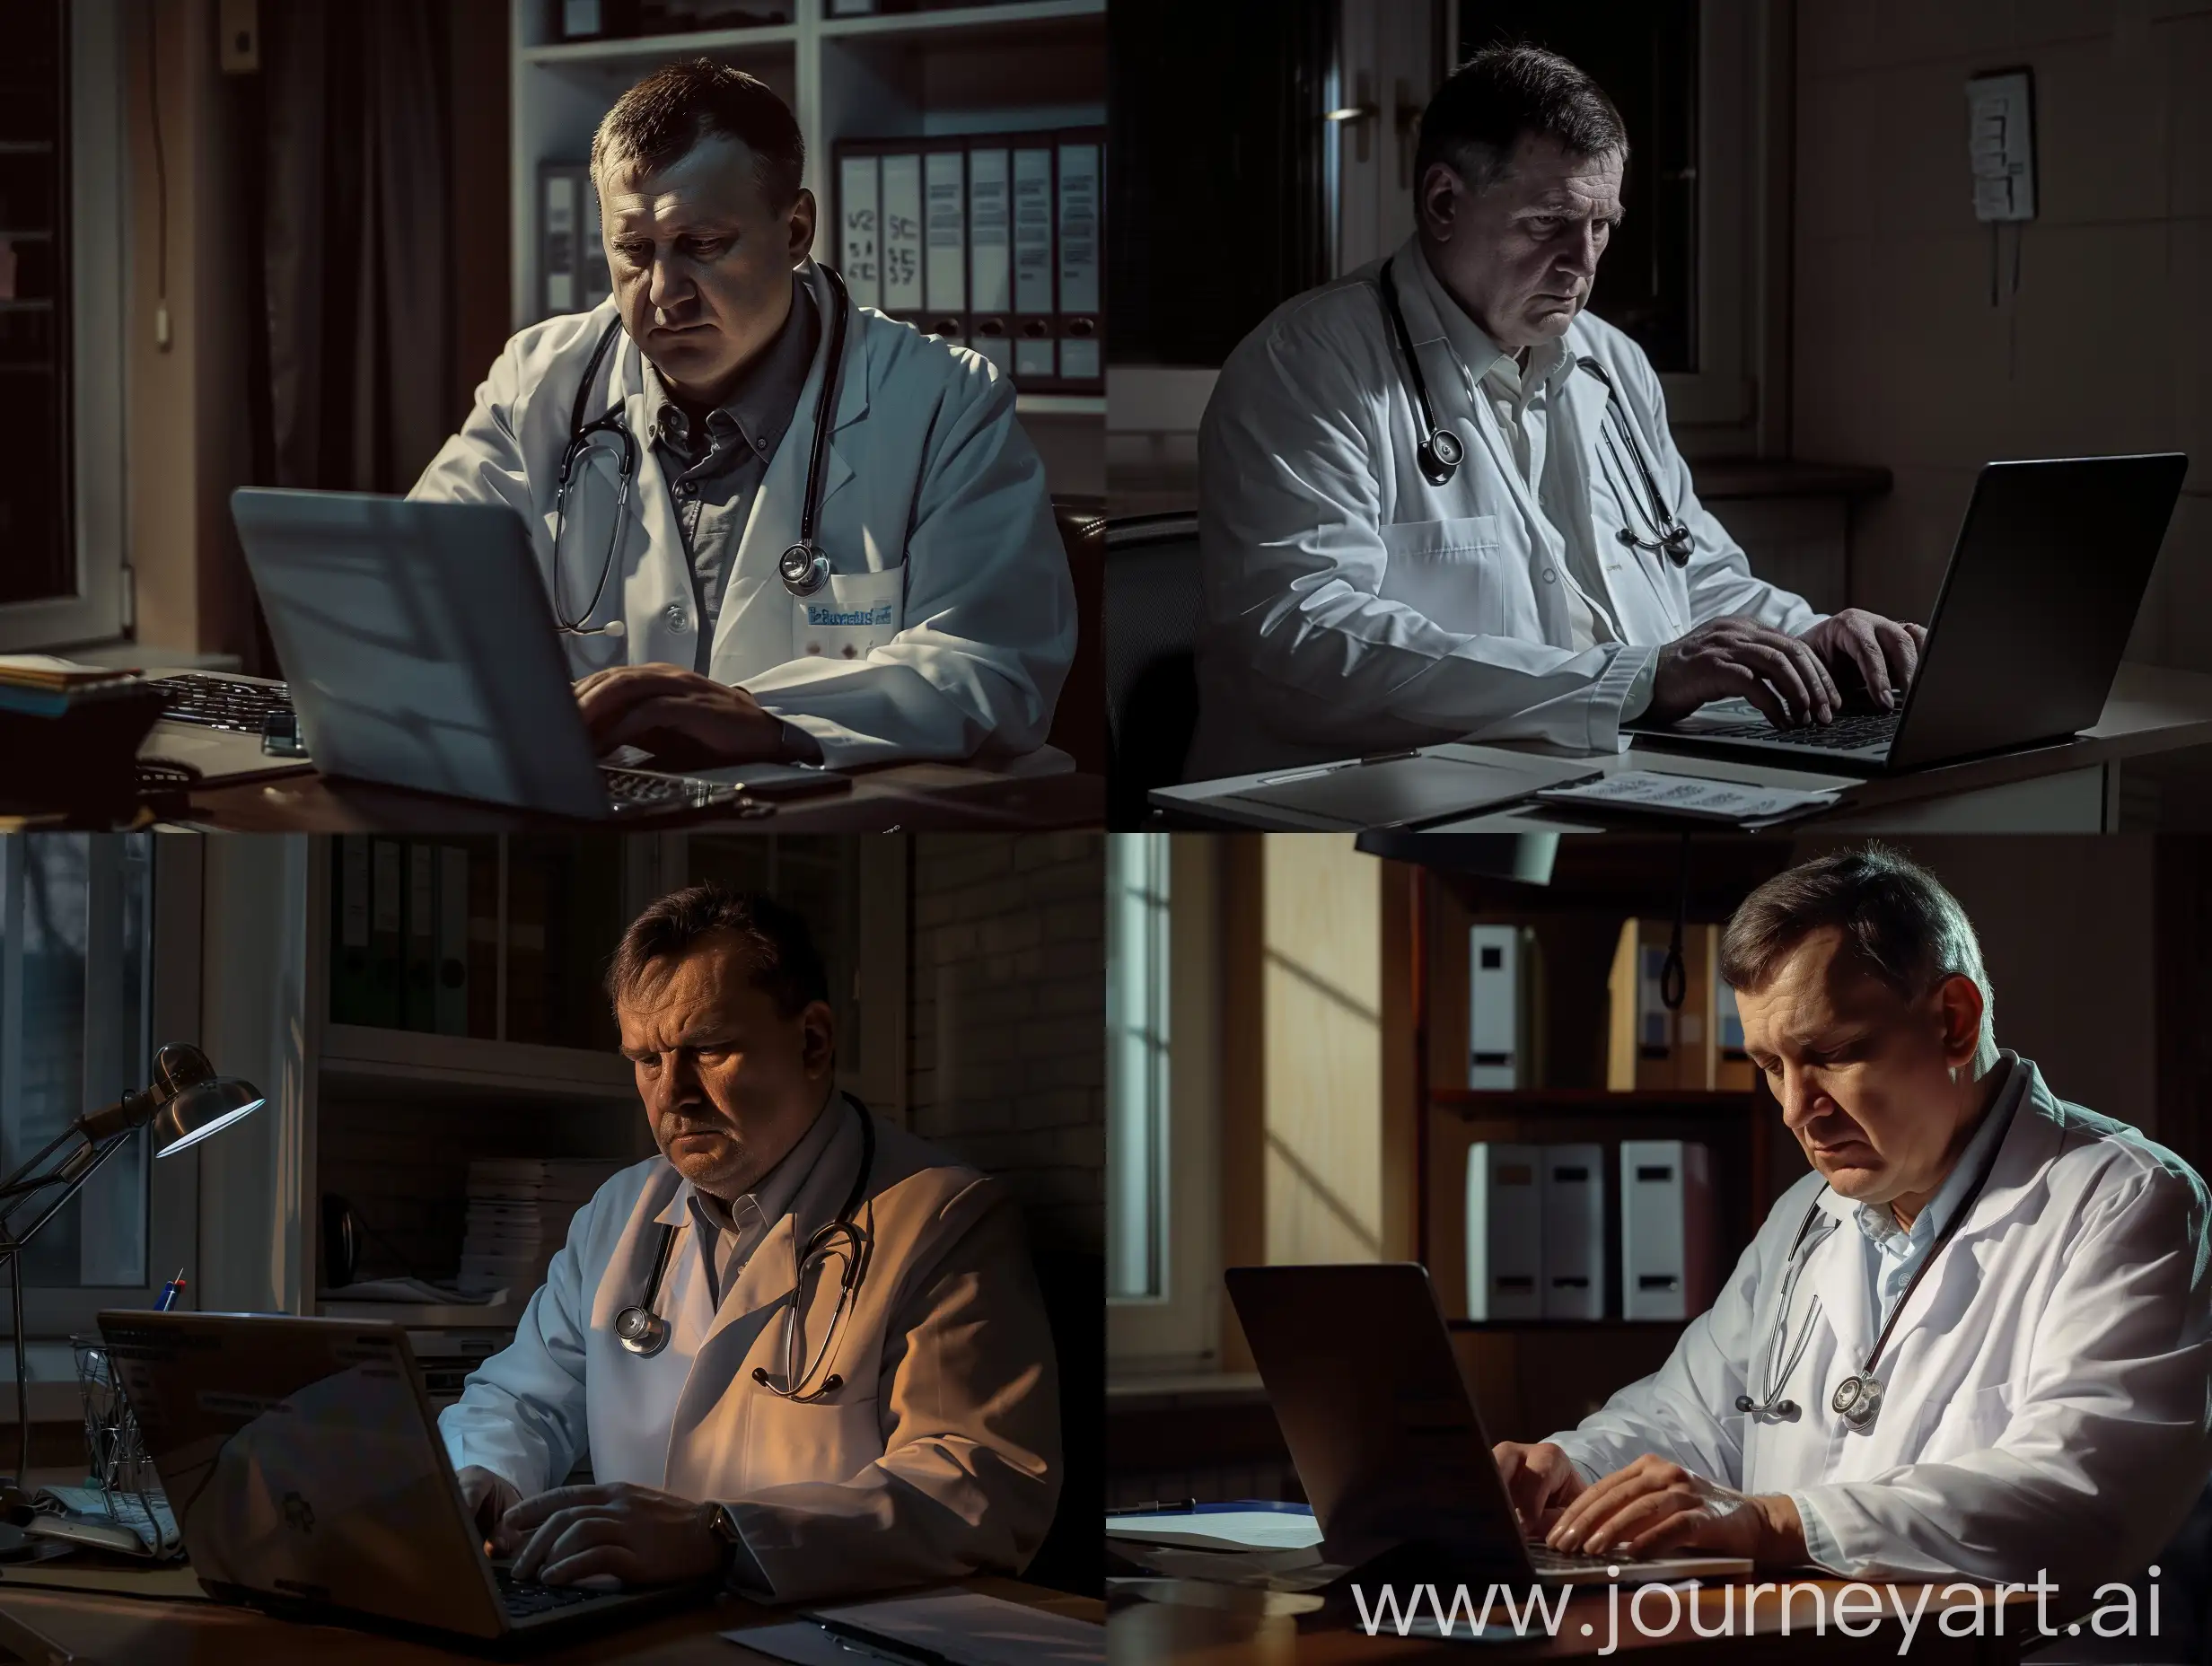 Фотореалистичная фотография  на которой русский врач сидит в кабинете и изучает отзывы о своей работе в сети интернет через ноутбук, детализация, темный свет, полумрак, детали
